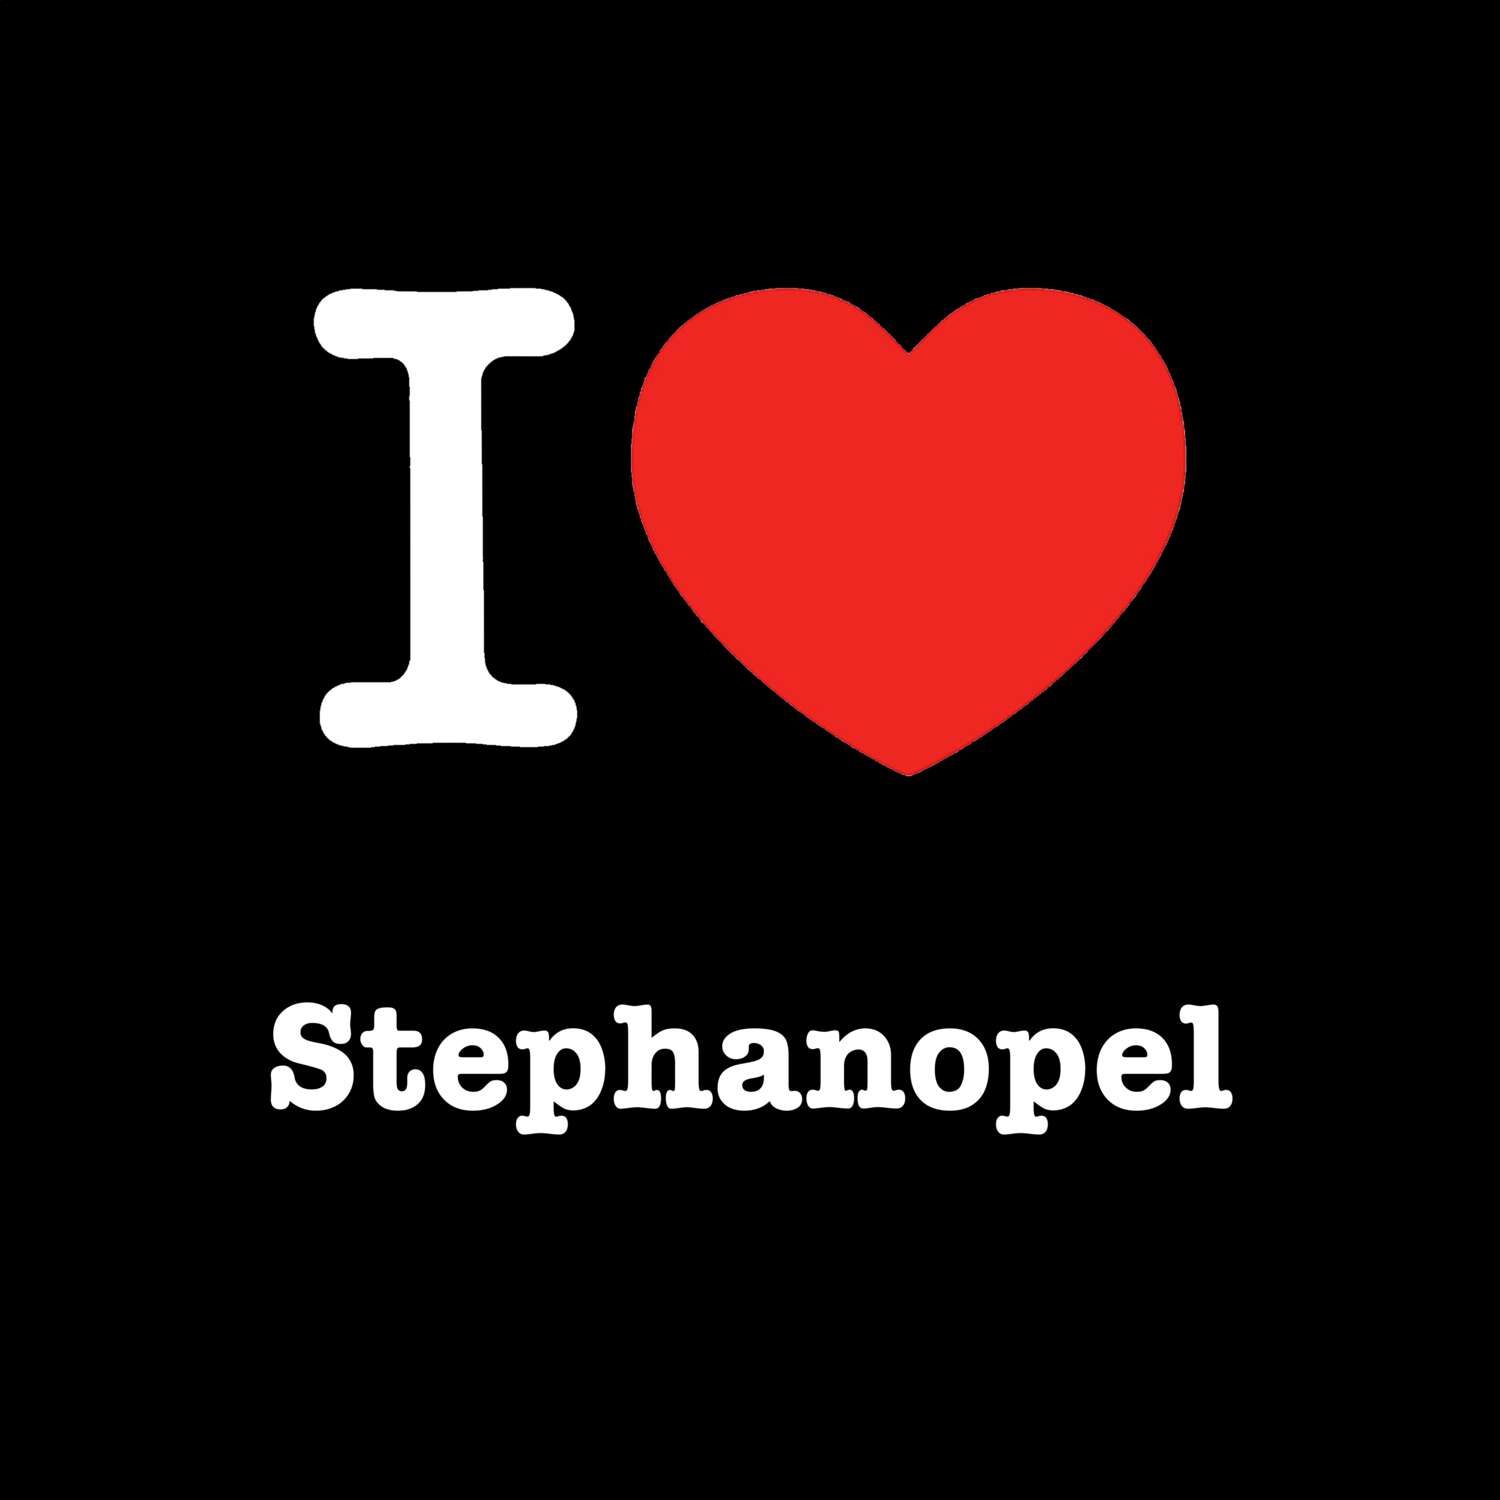 Stephanopel T-Shirt »I love«